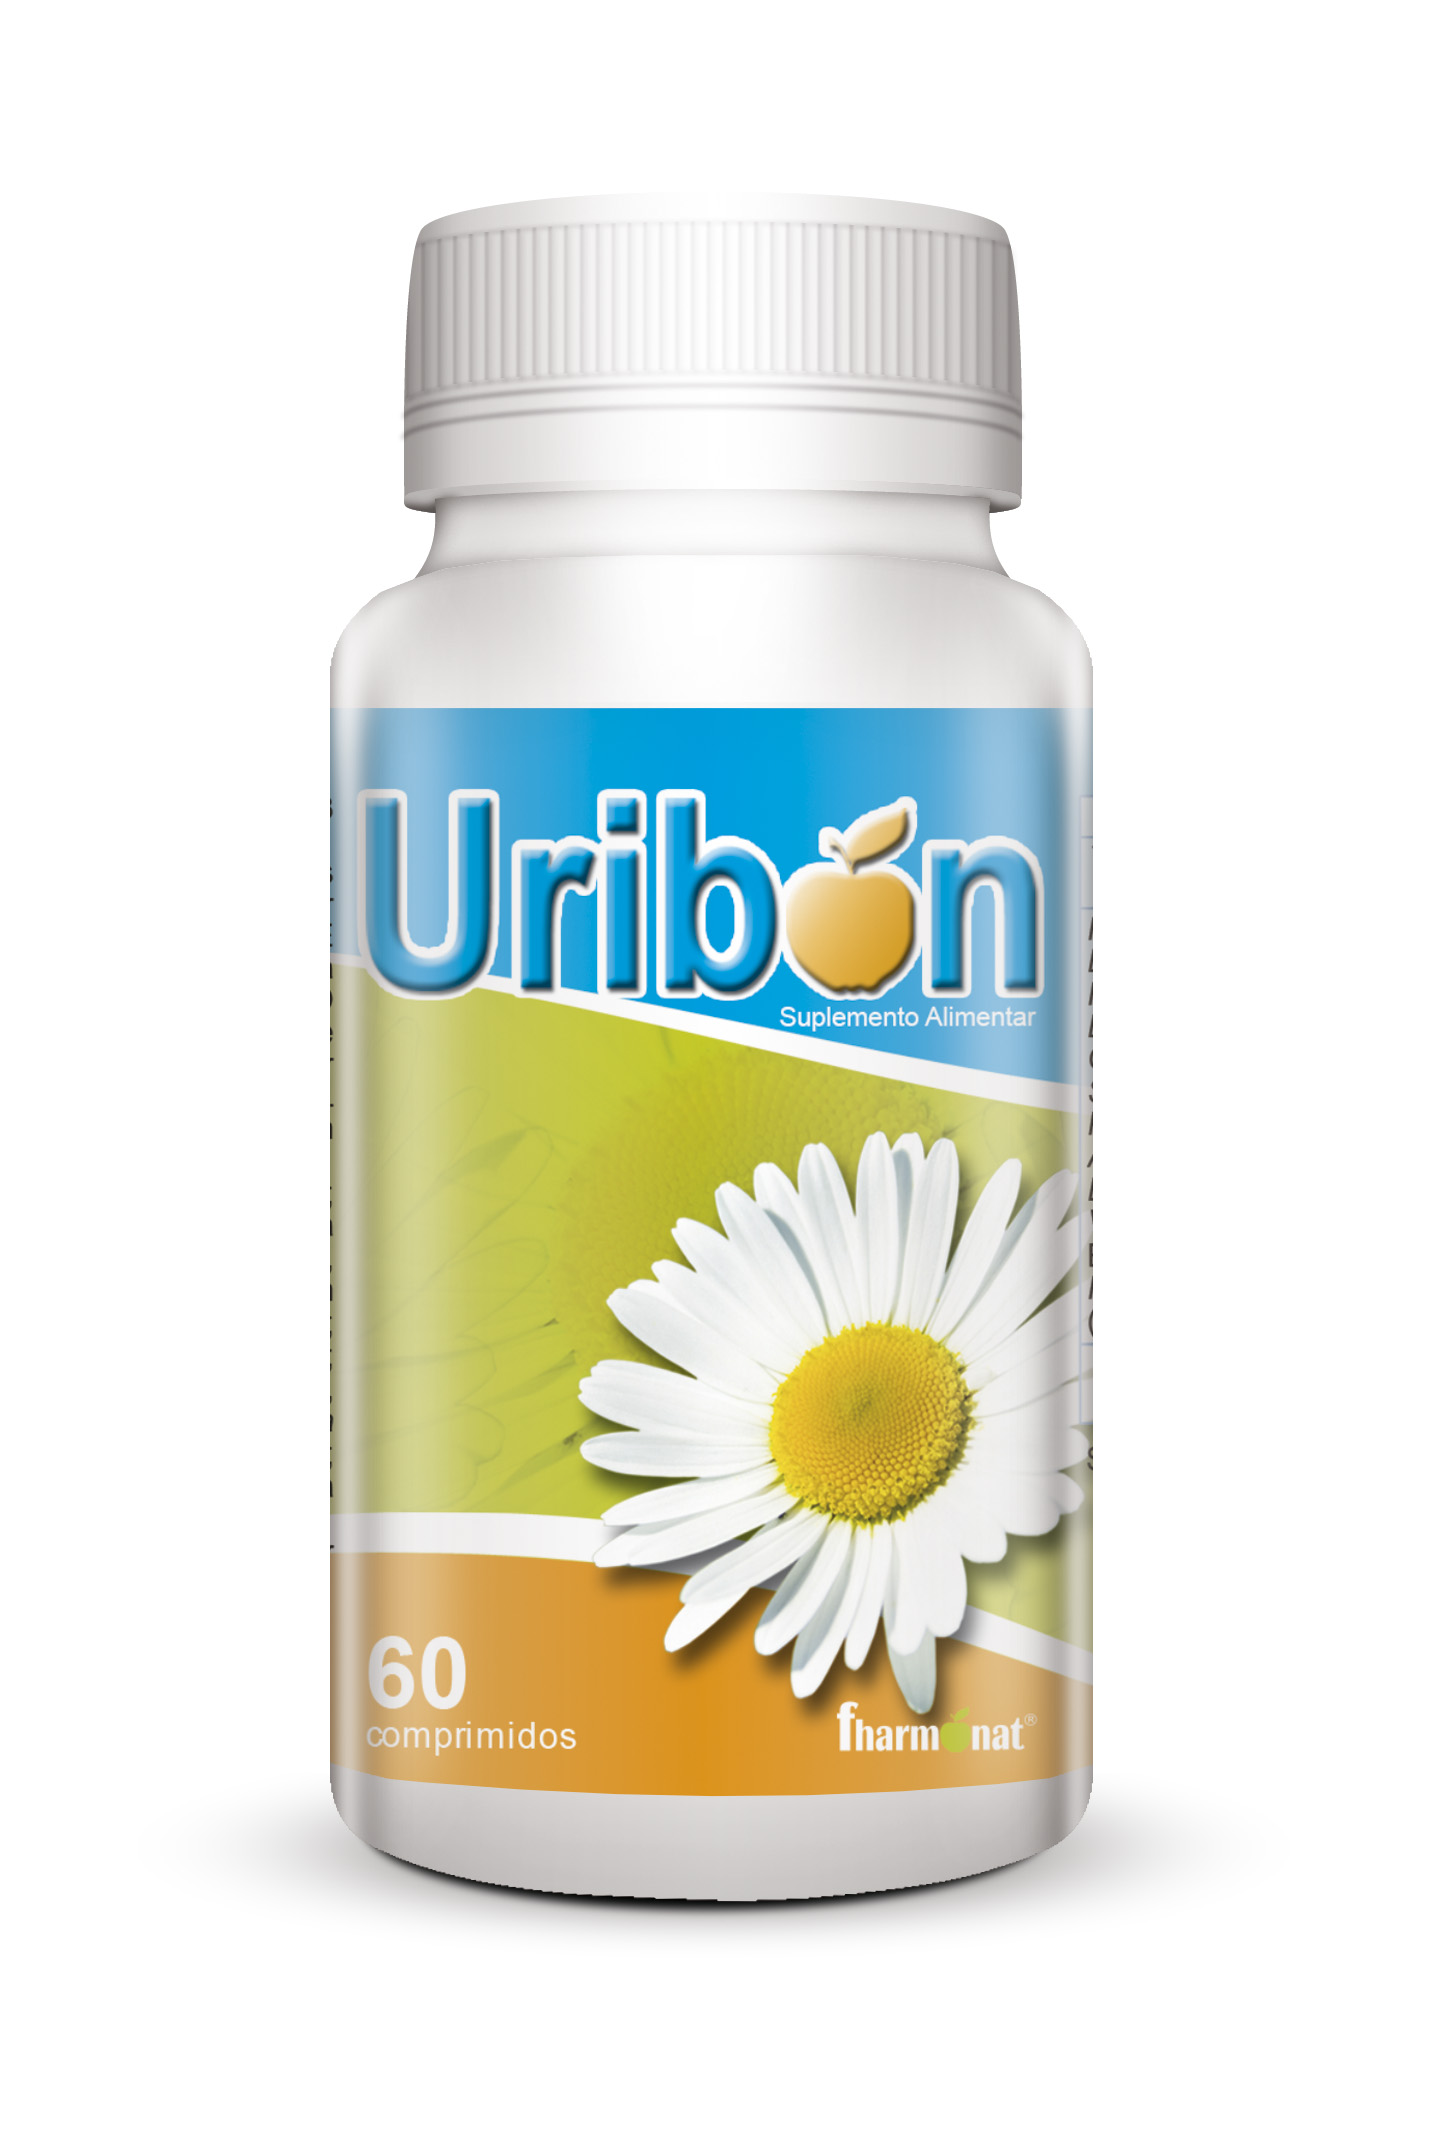 Uribon (60 Comp.)